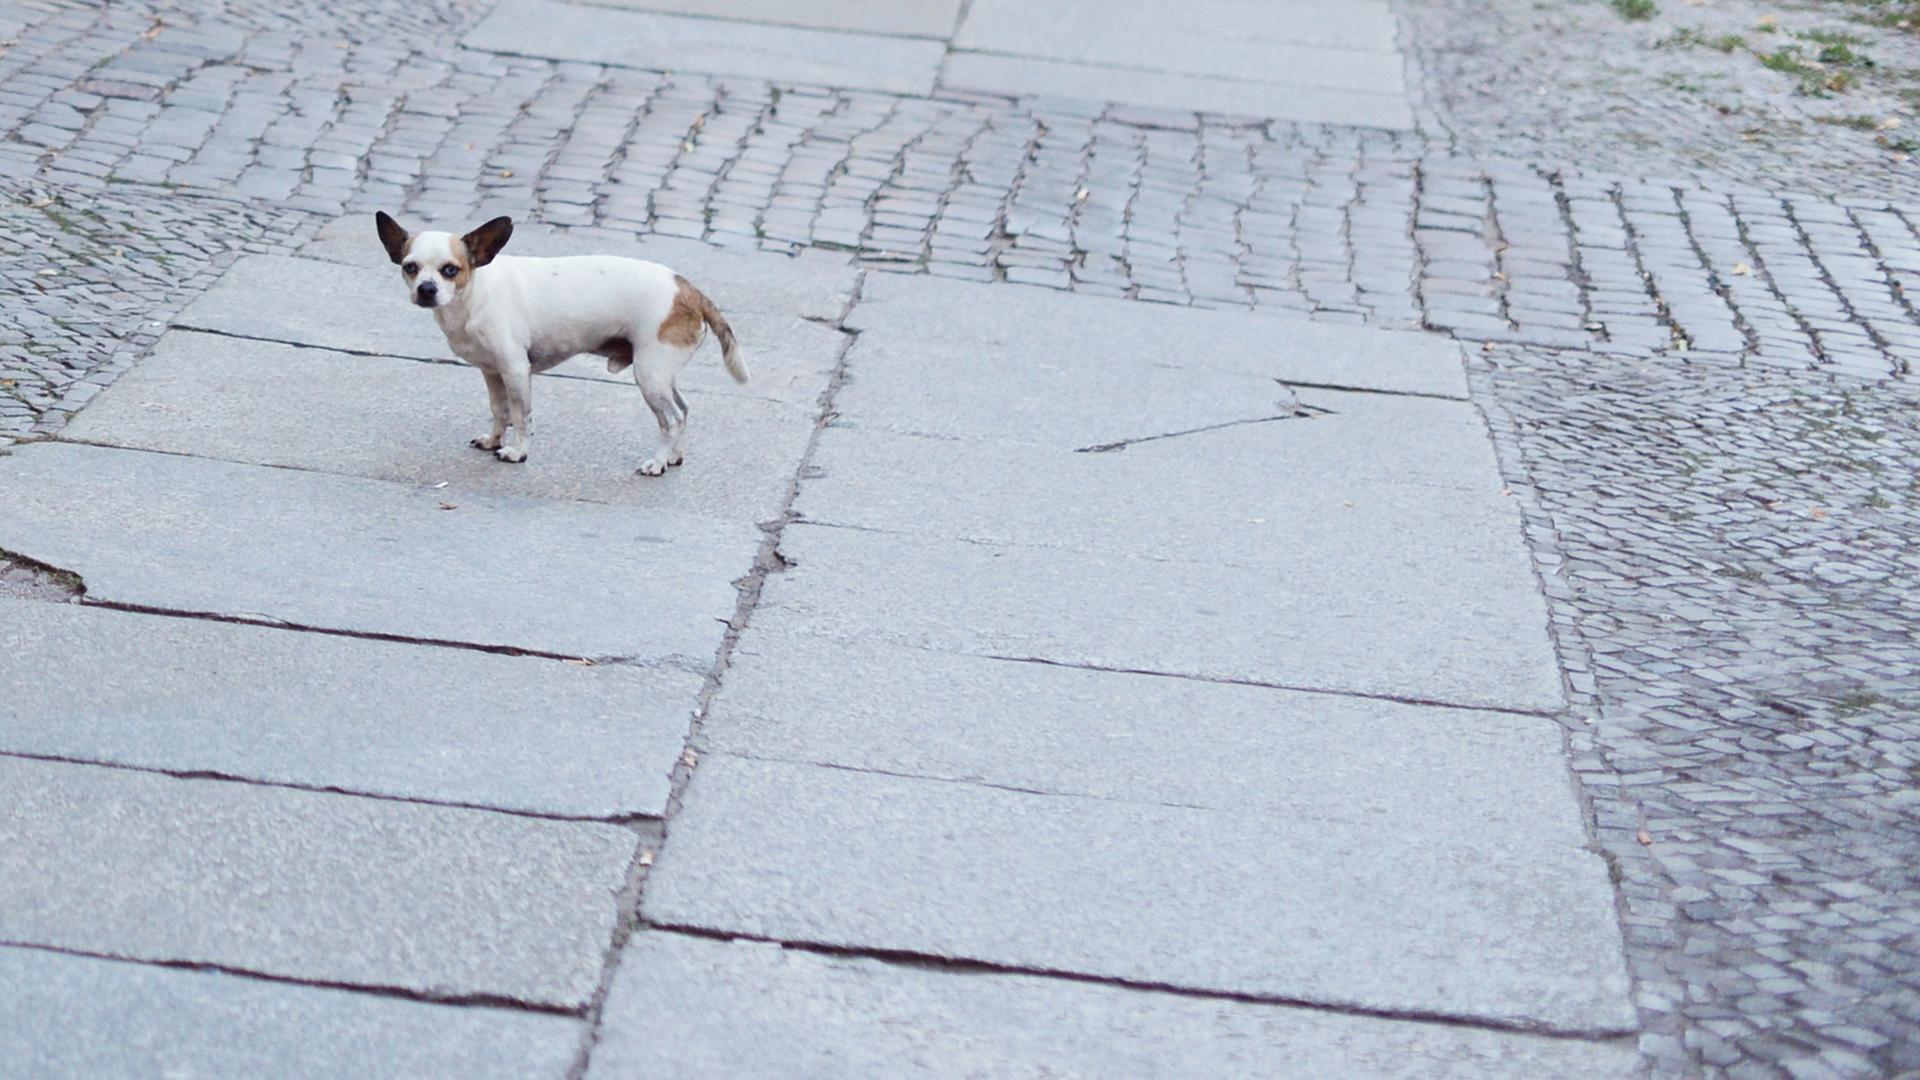 Ein Hund auf einer Granit-Gewegplatte, einem sogenannten "Schweinebauch"